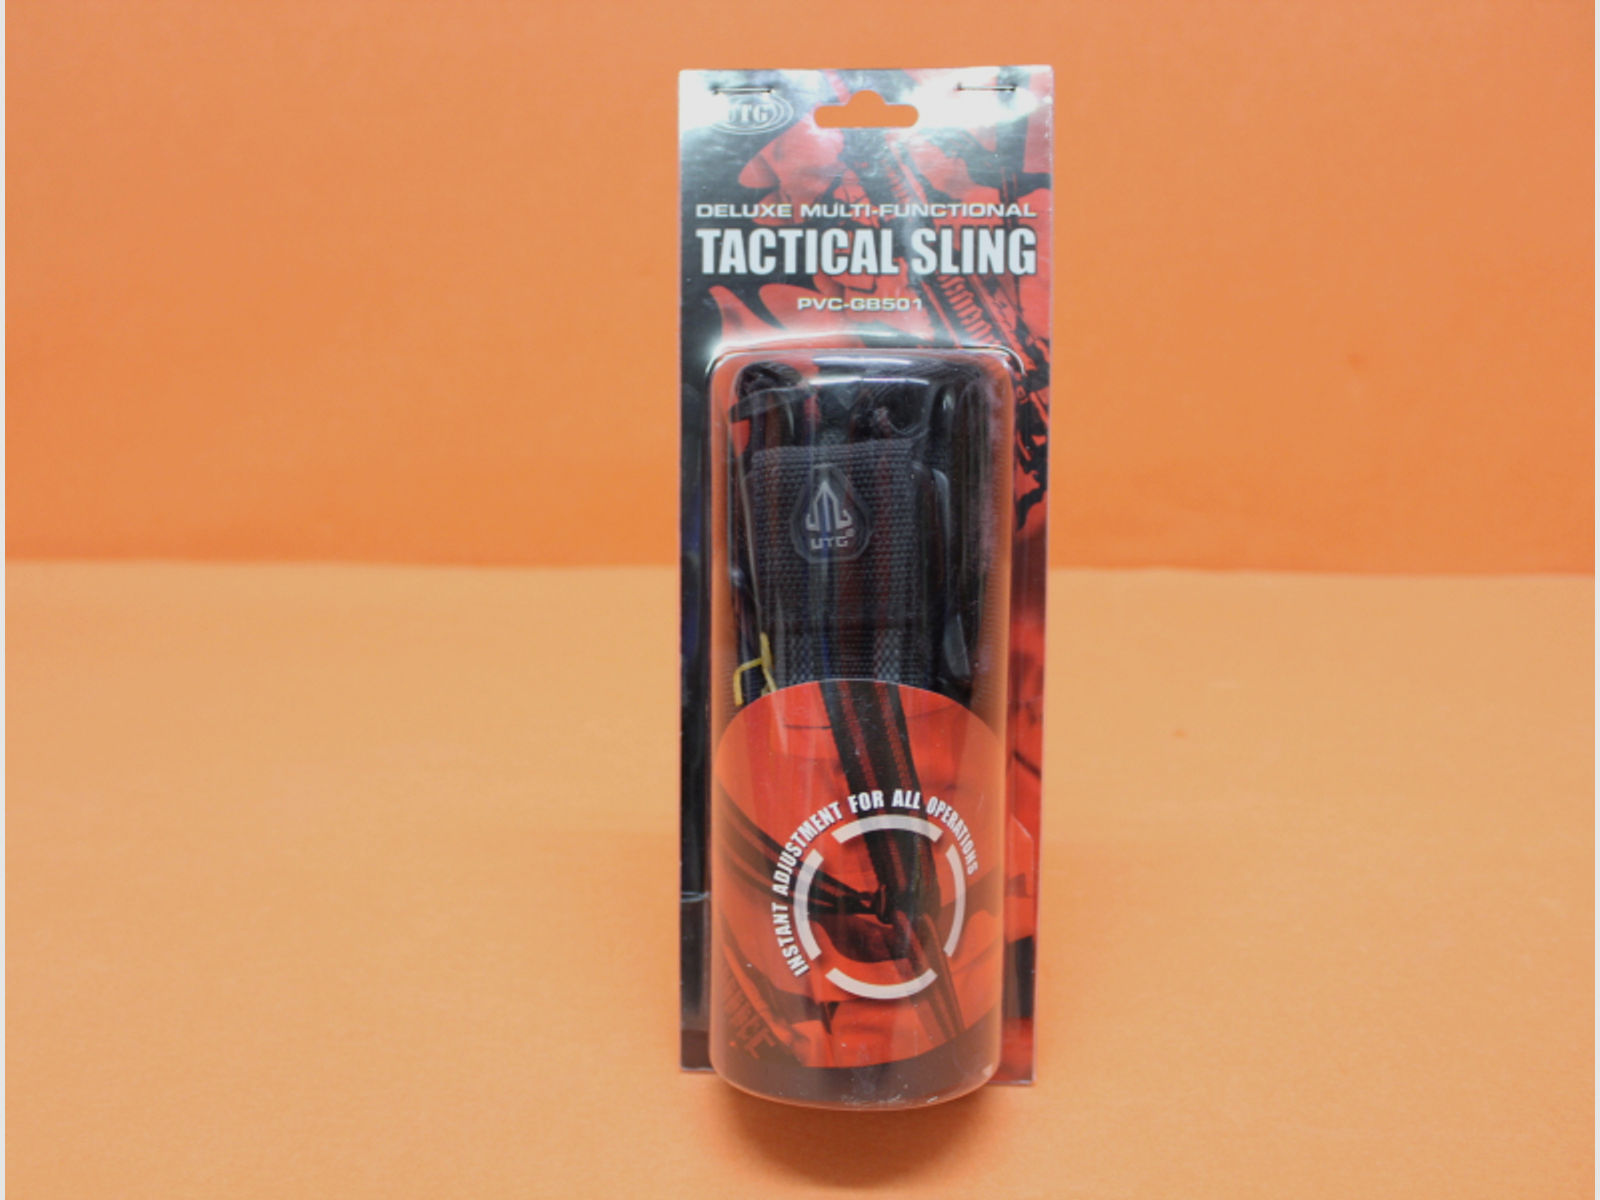 UTG Multi-Functional Tactical Sling (PVC-GB501) Black/ 3-Punkt Trageriemen mit Karabinerhaken